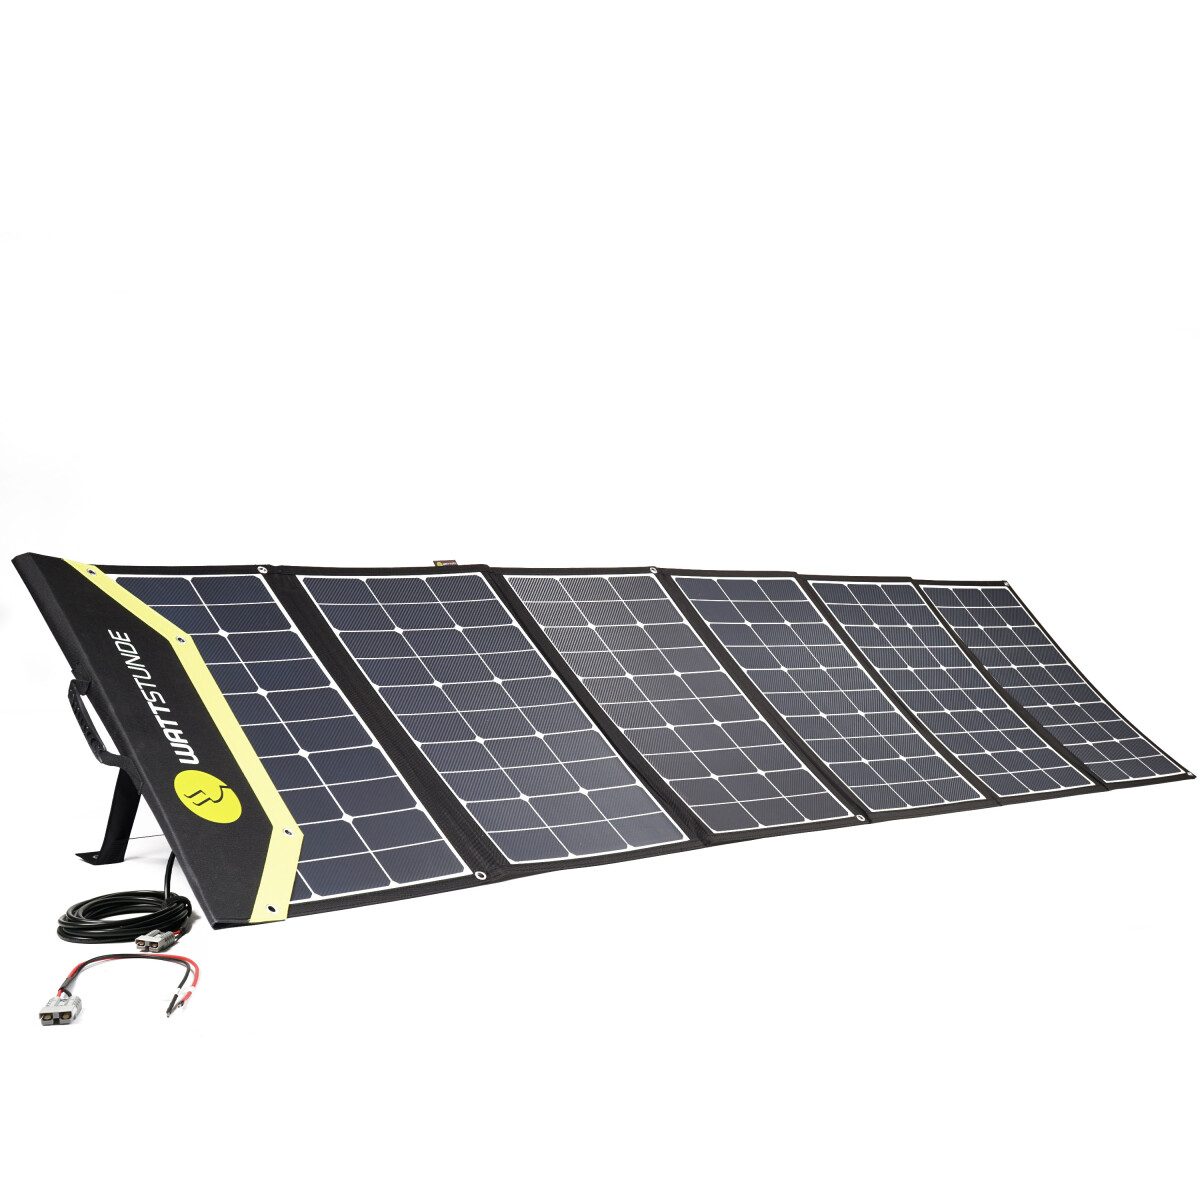 Wattstunde Sunfolder 340SF - Flexibles Solarpanel für unterwegs